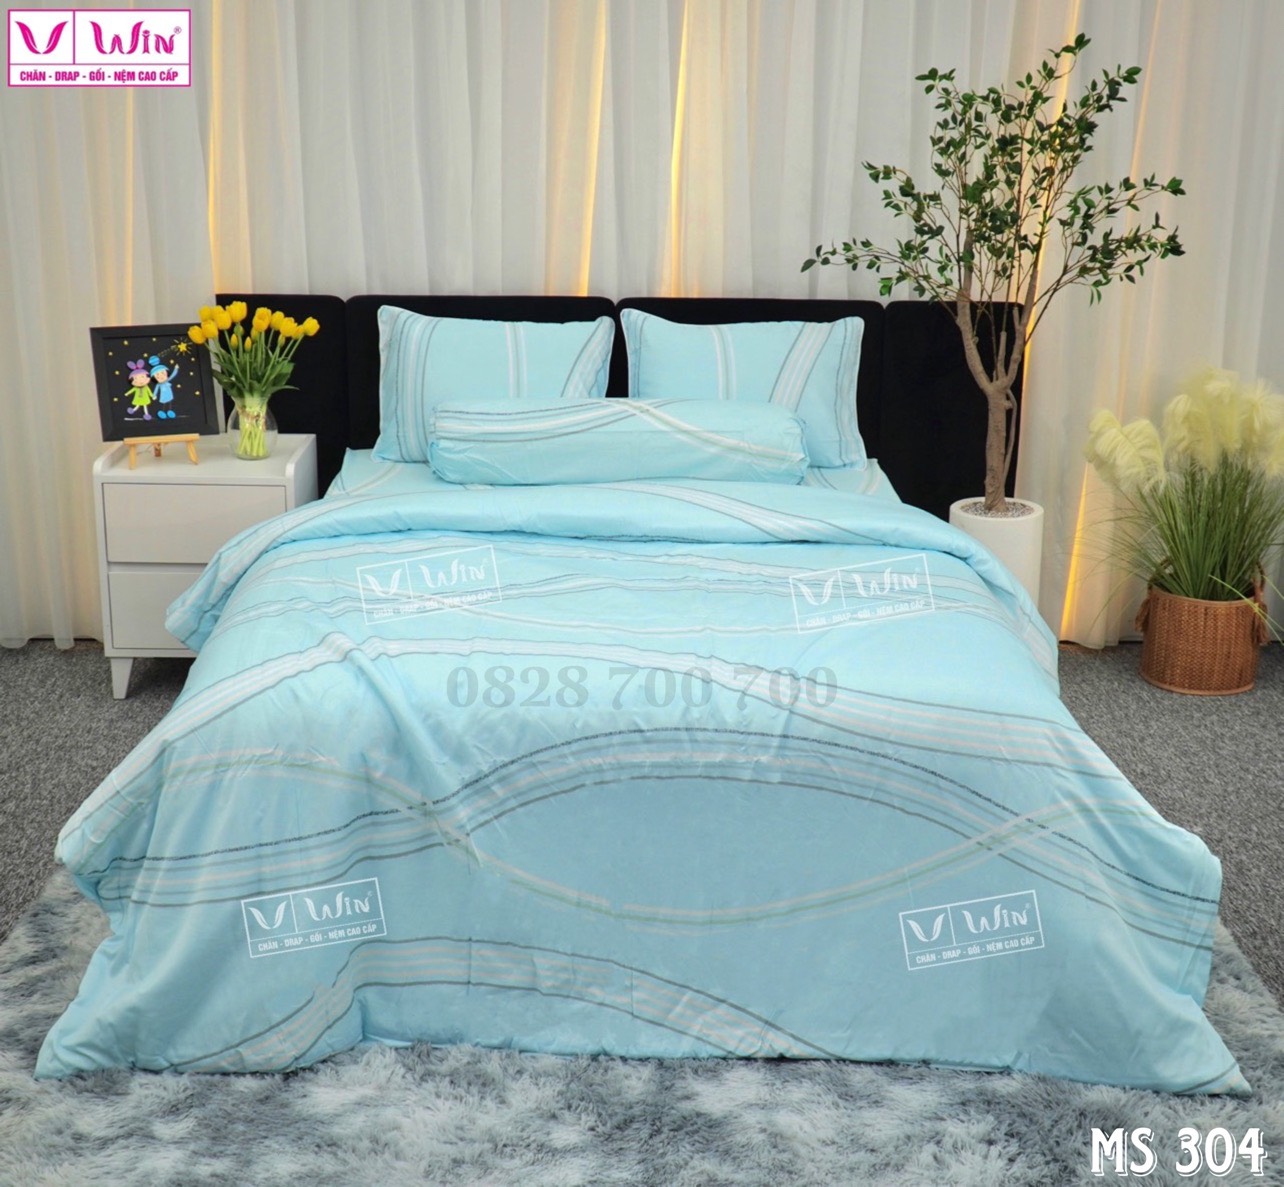 Cách lựa chọn màu sắc chăn ga phù hợp với không gian phòng ngủ